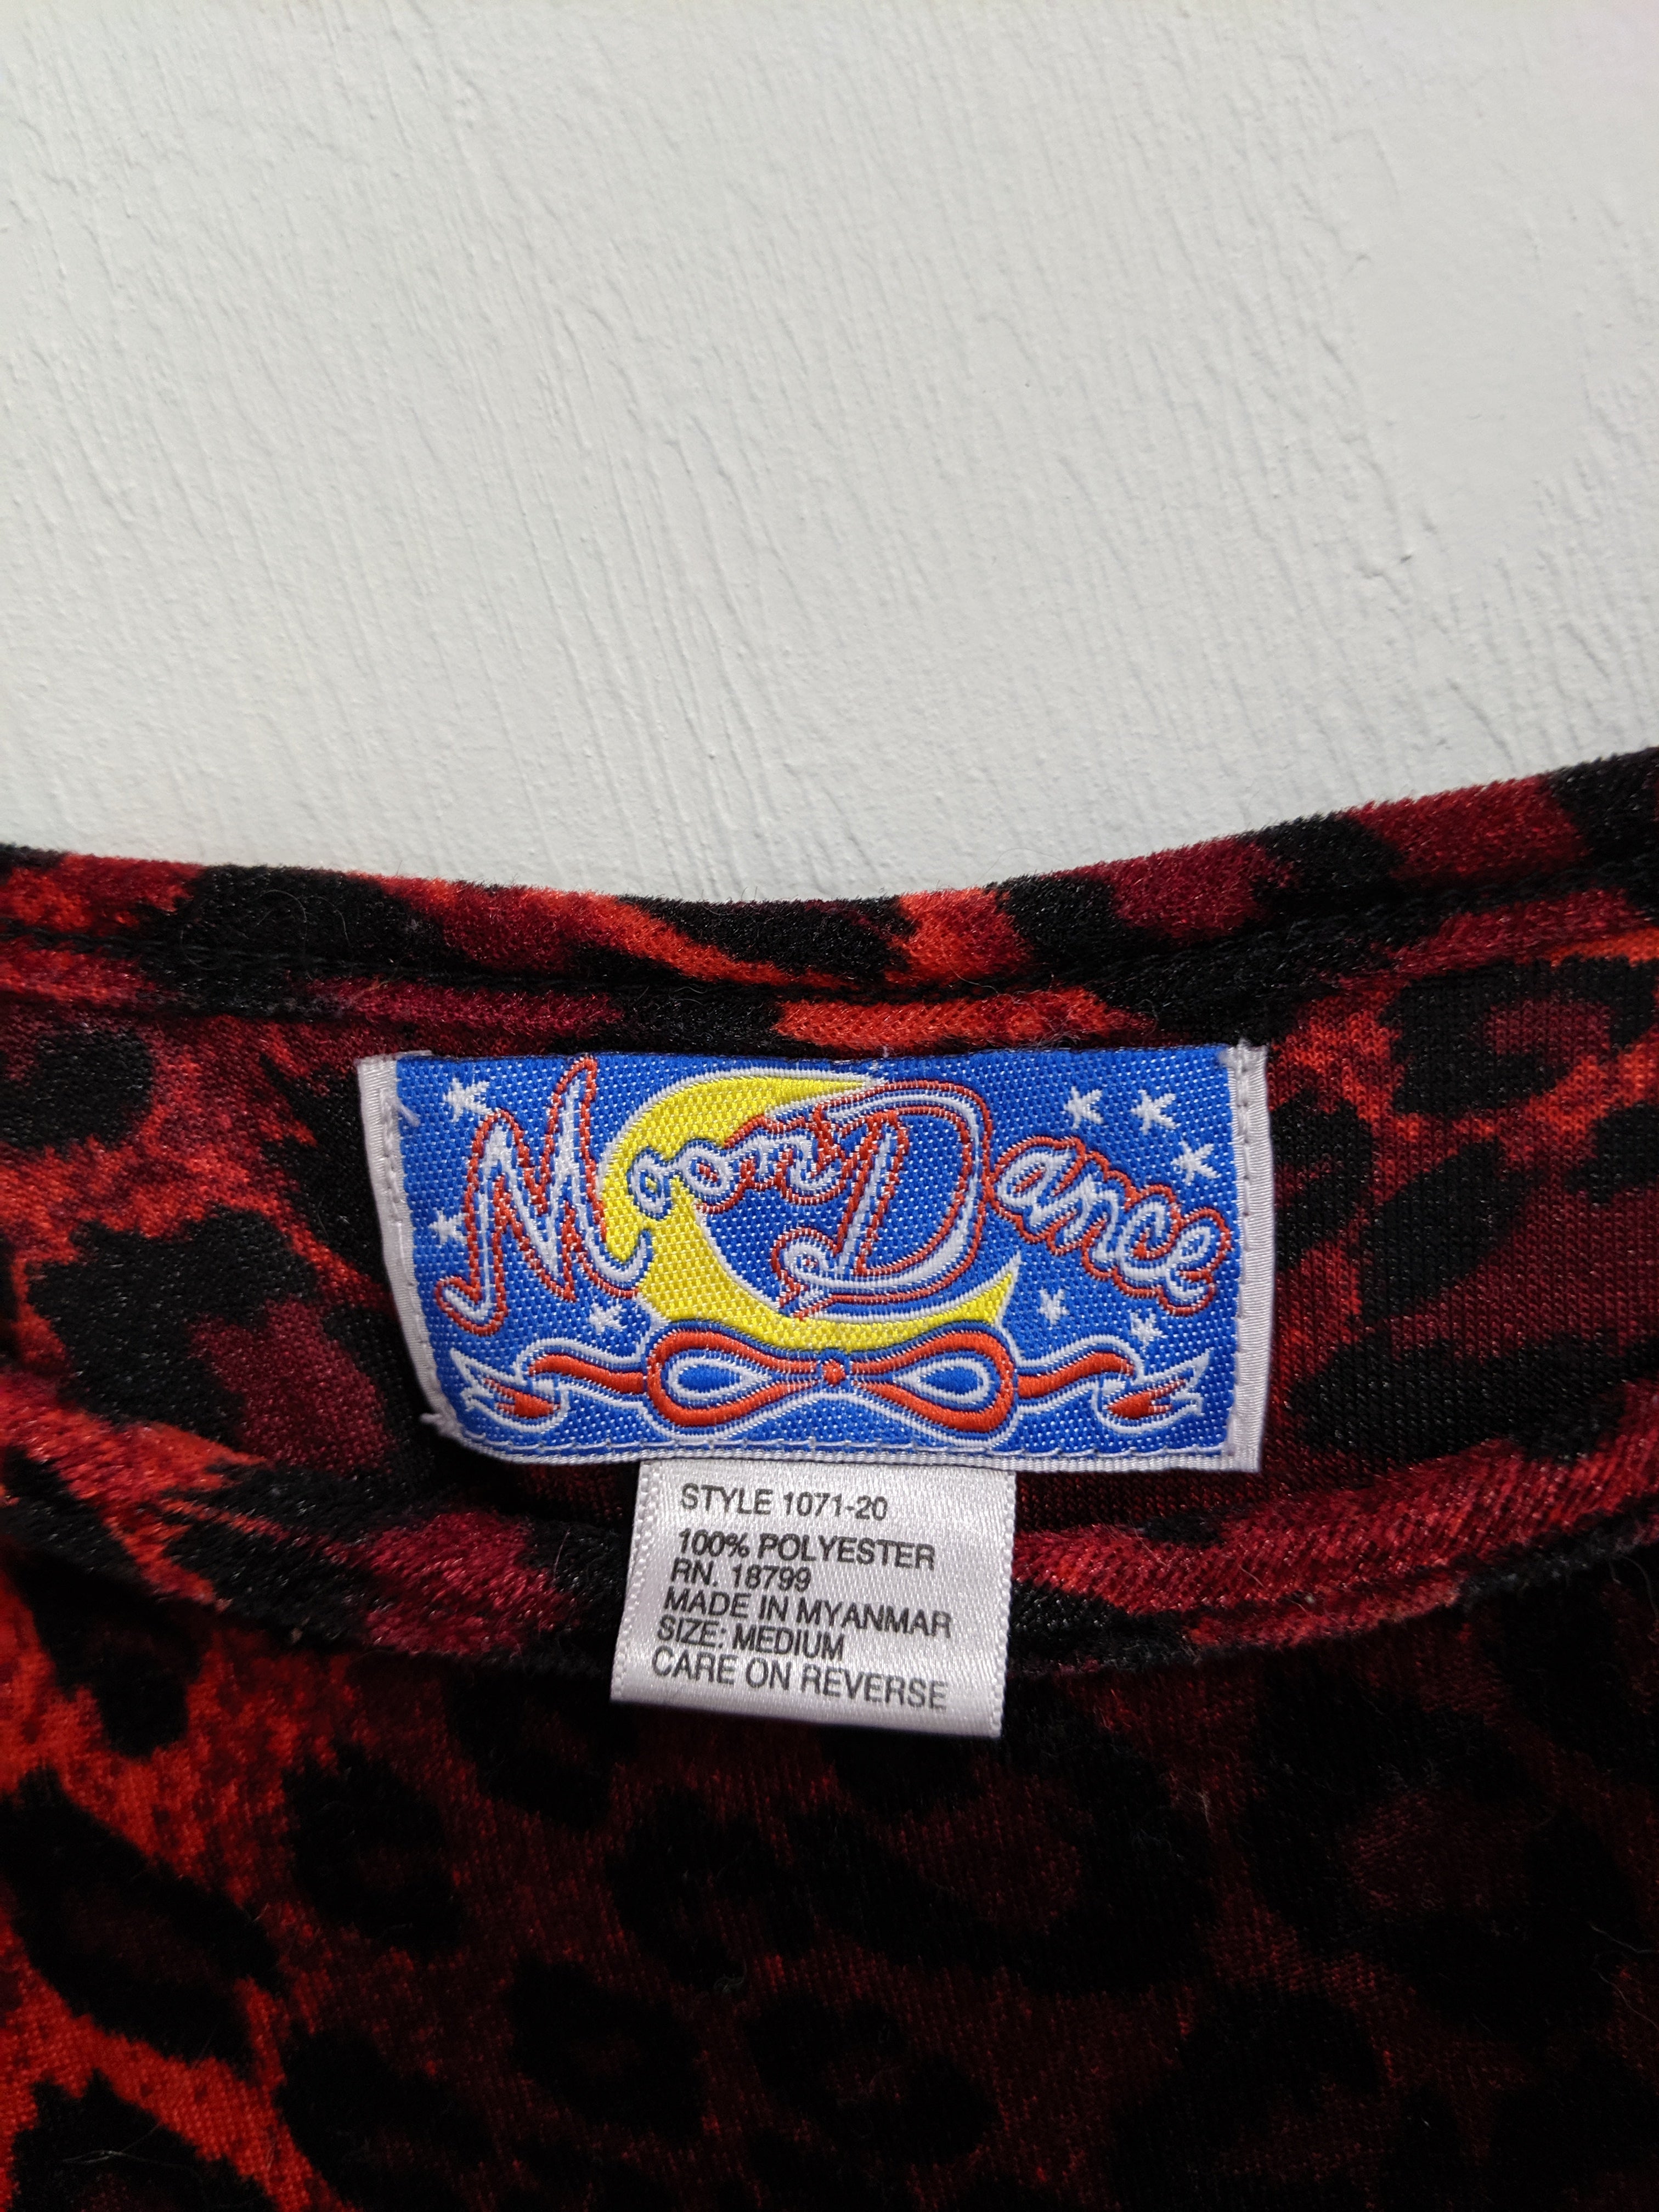 [M] Vintage Velvet Leopard Print Slip Dress